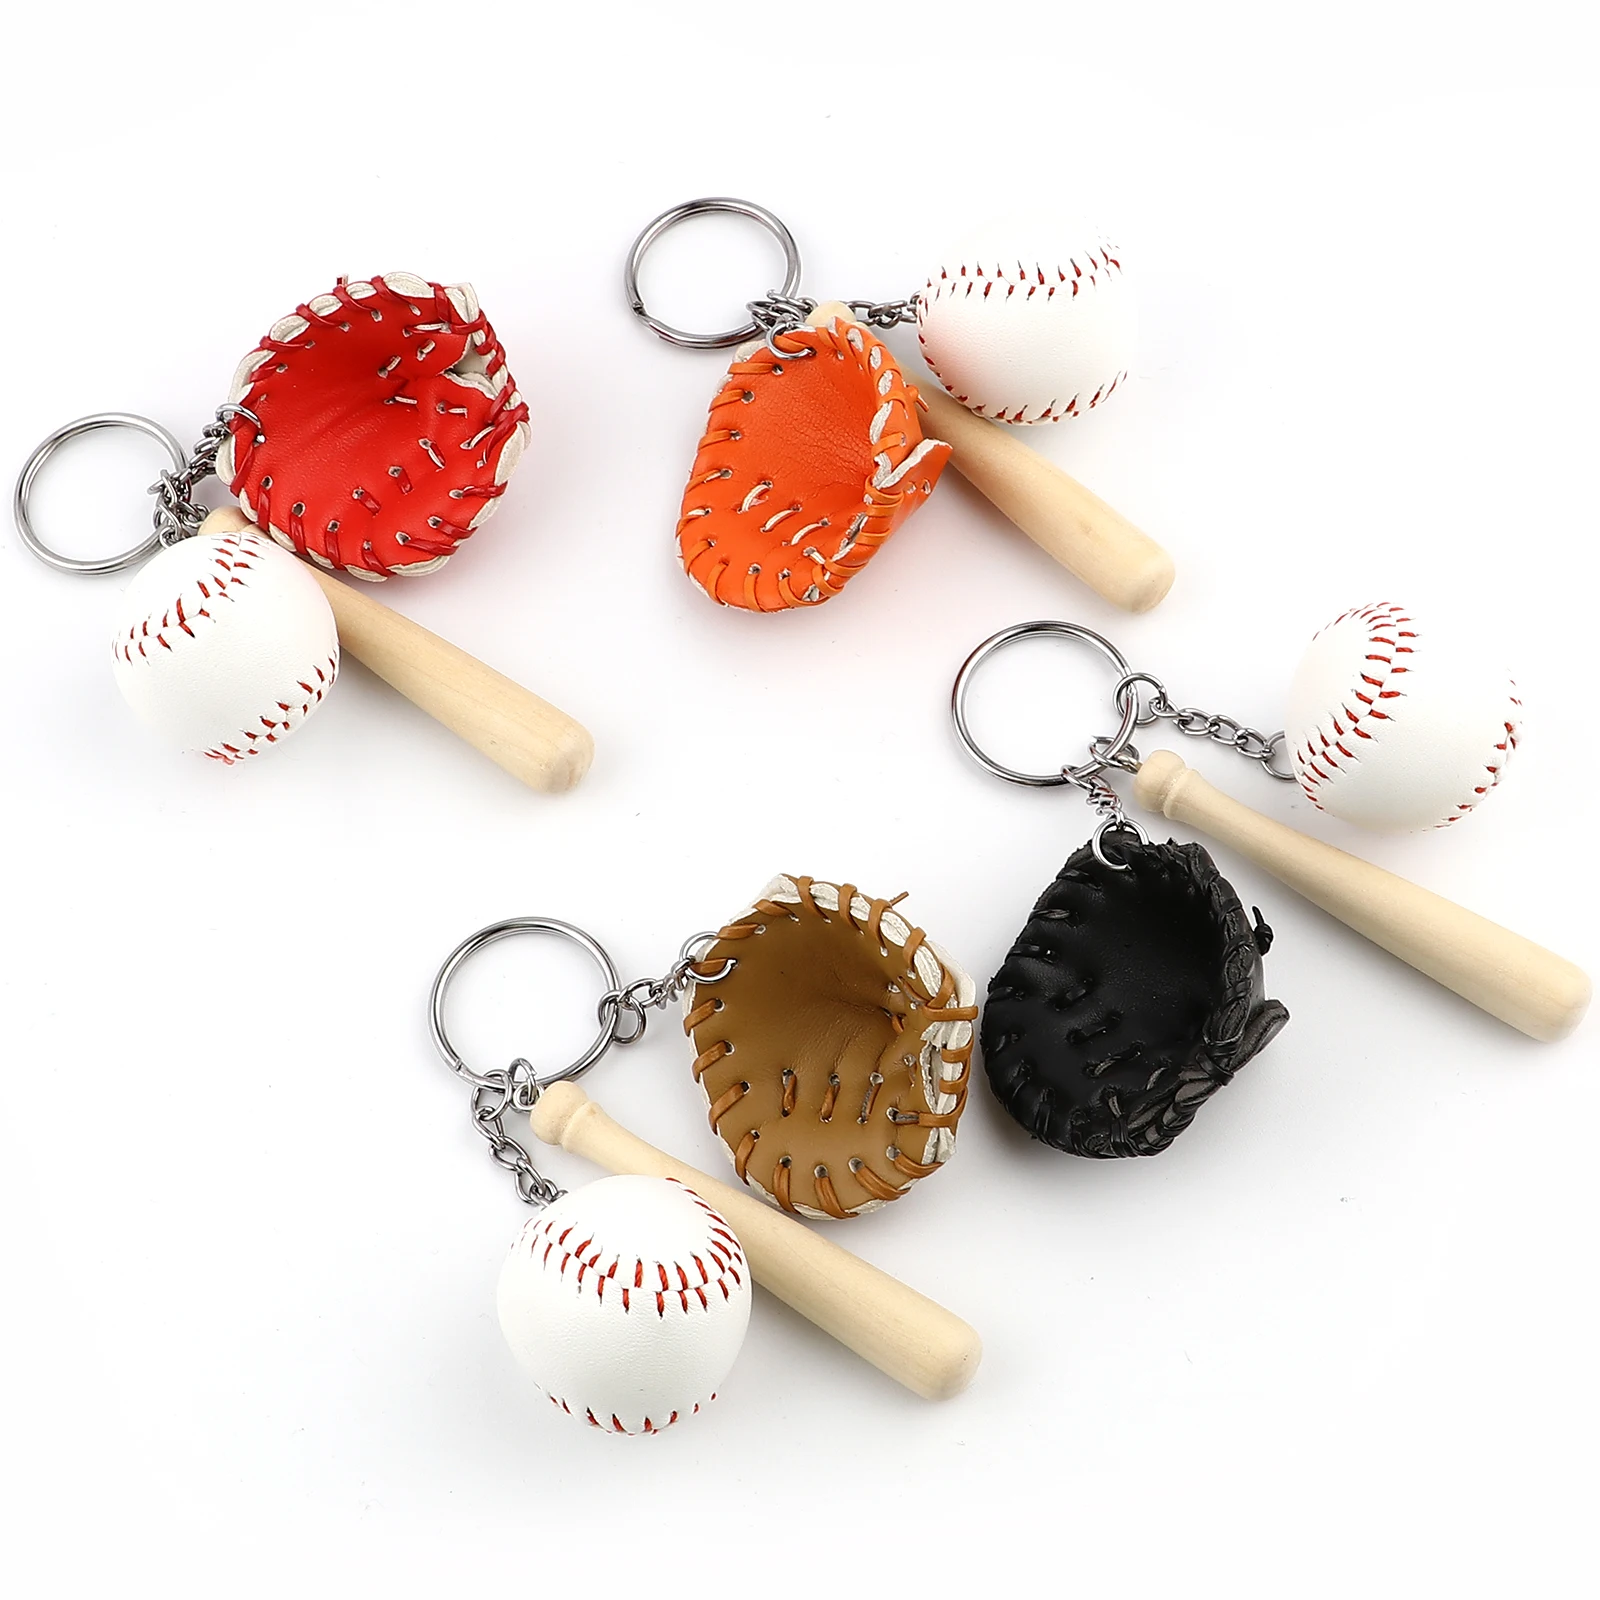 Colorful Mini Baseball Glove Wooden Ball and Bat Keyring 1